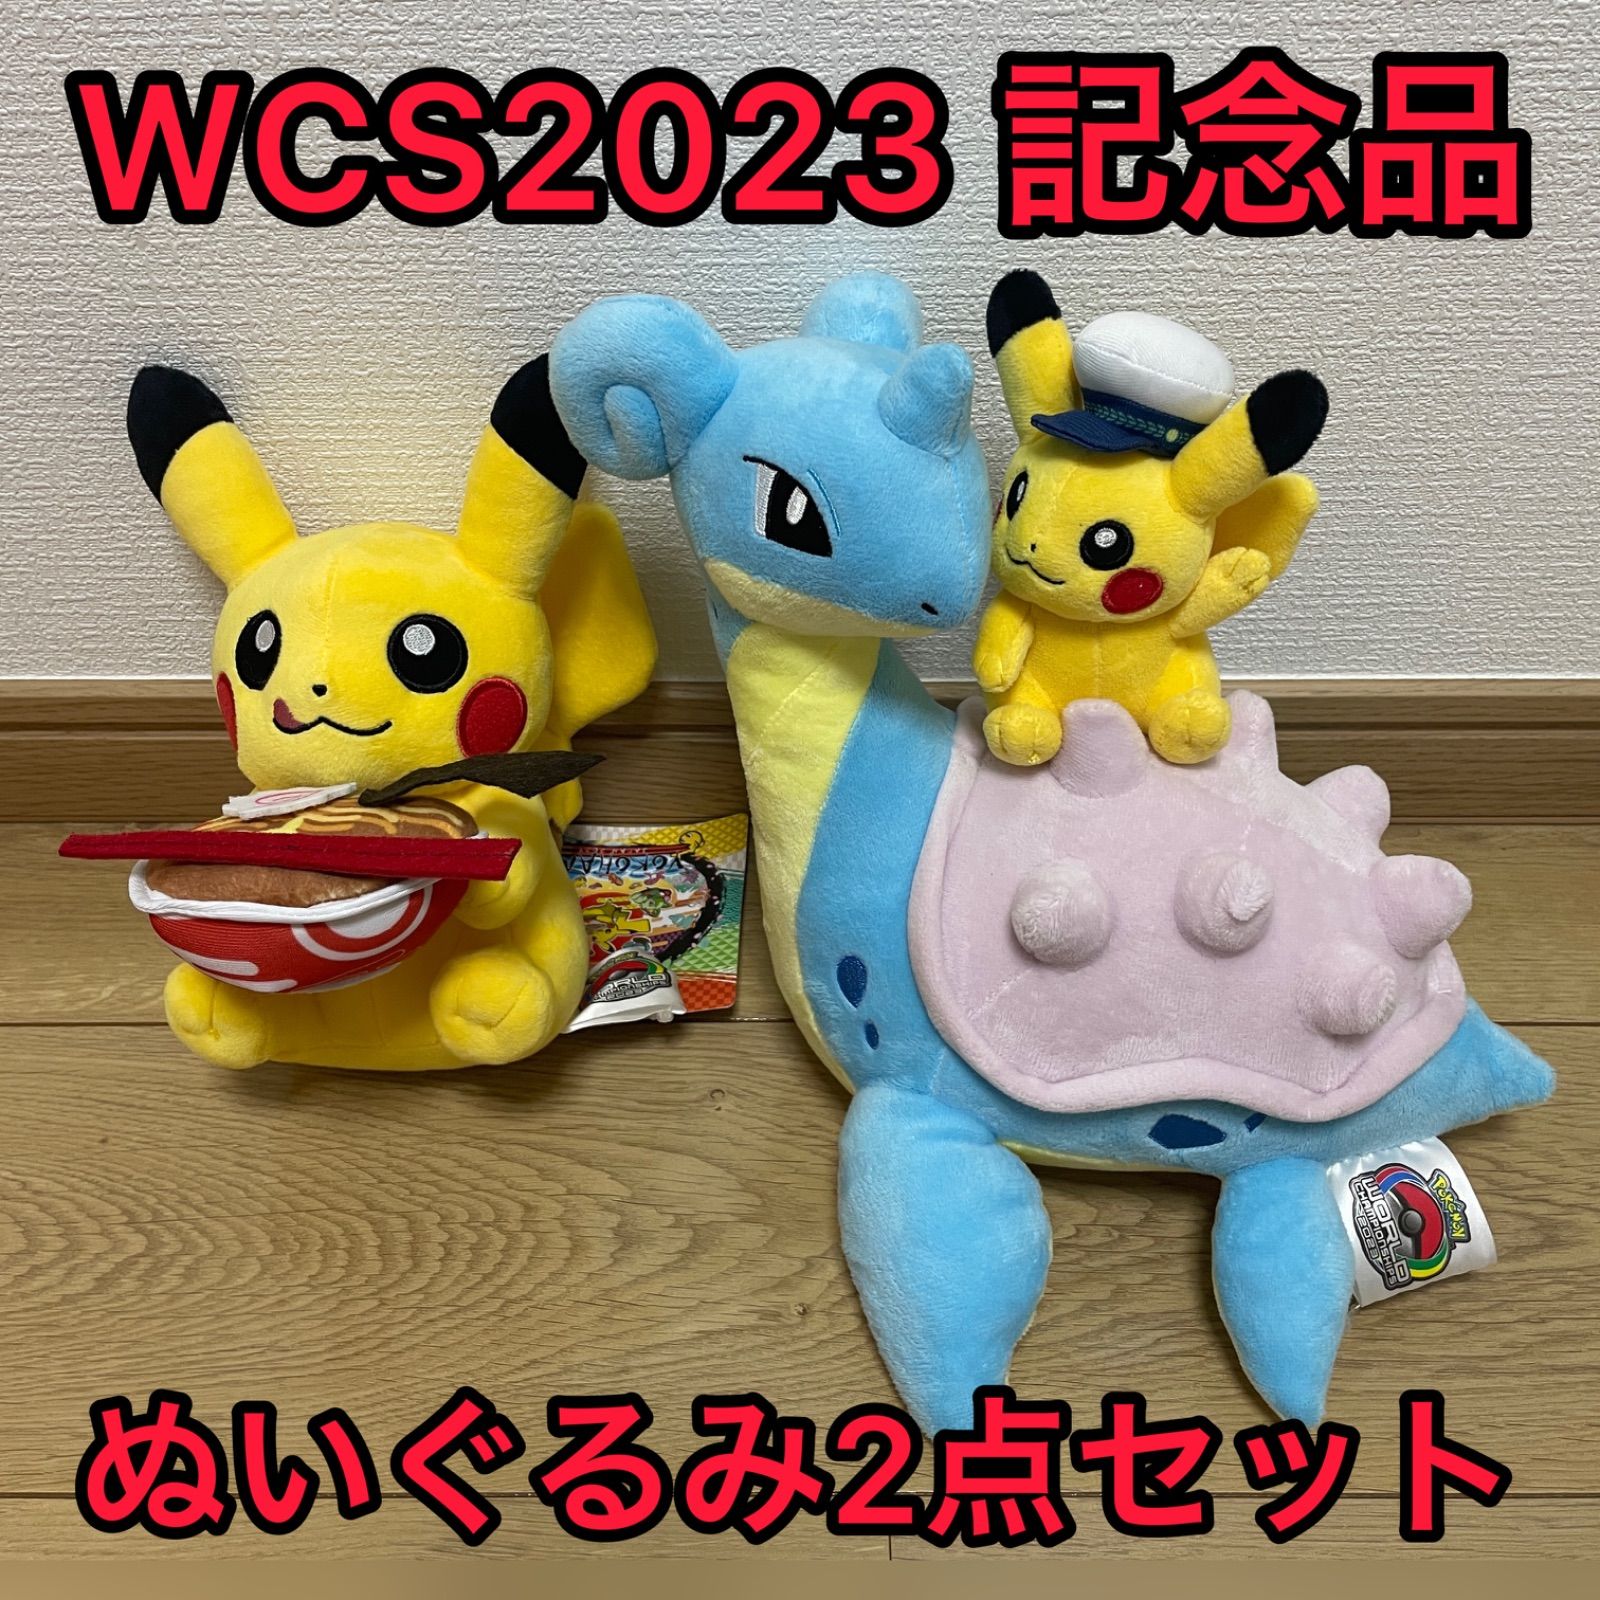 ポケモン WCS2023 横浜開催記念限定品 ぬいぐるみ2点セット 新品